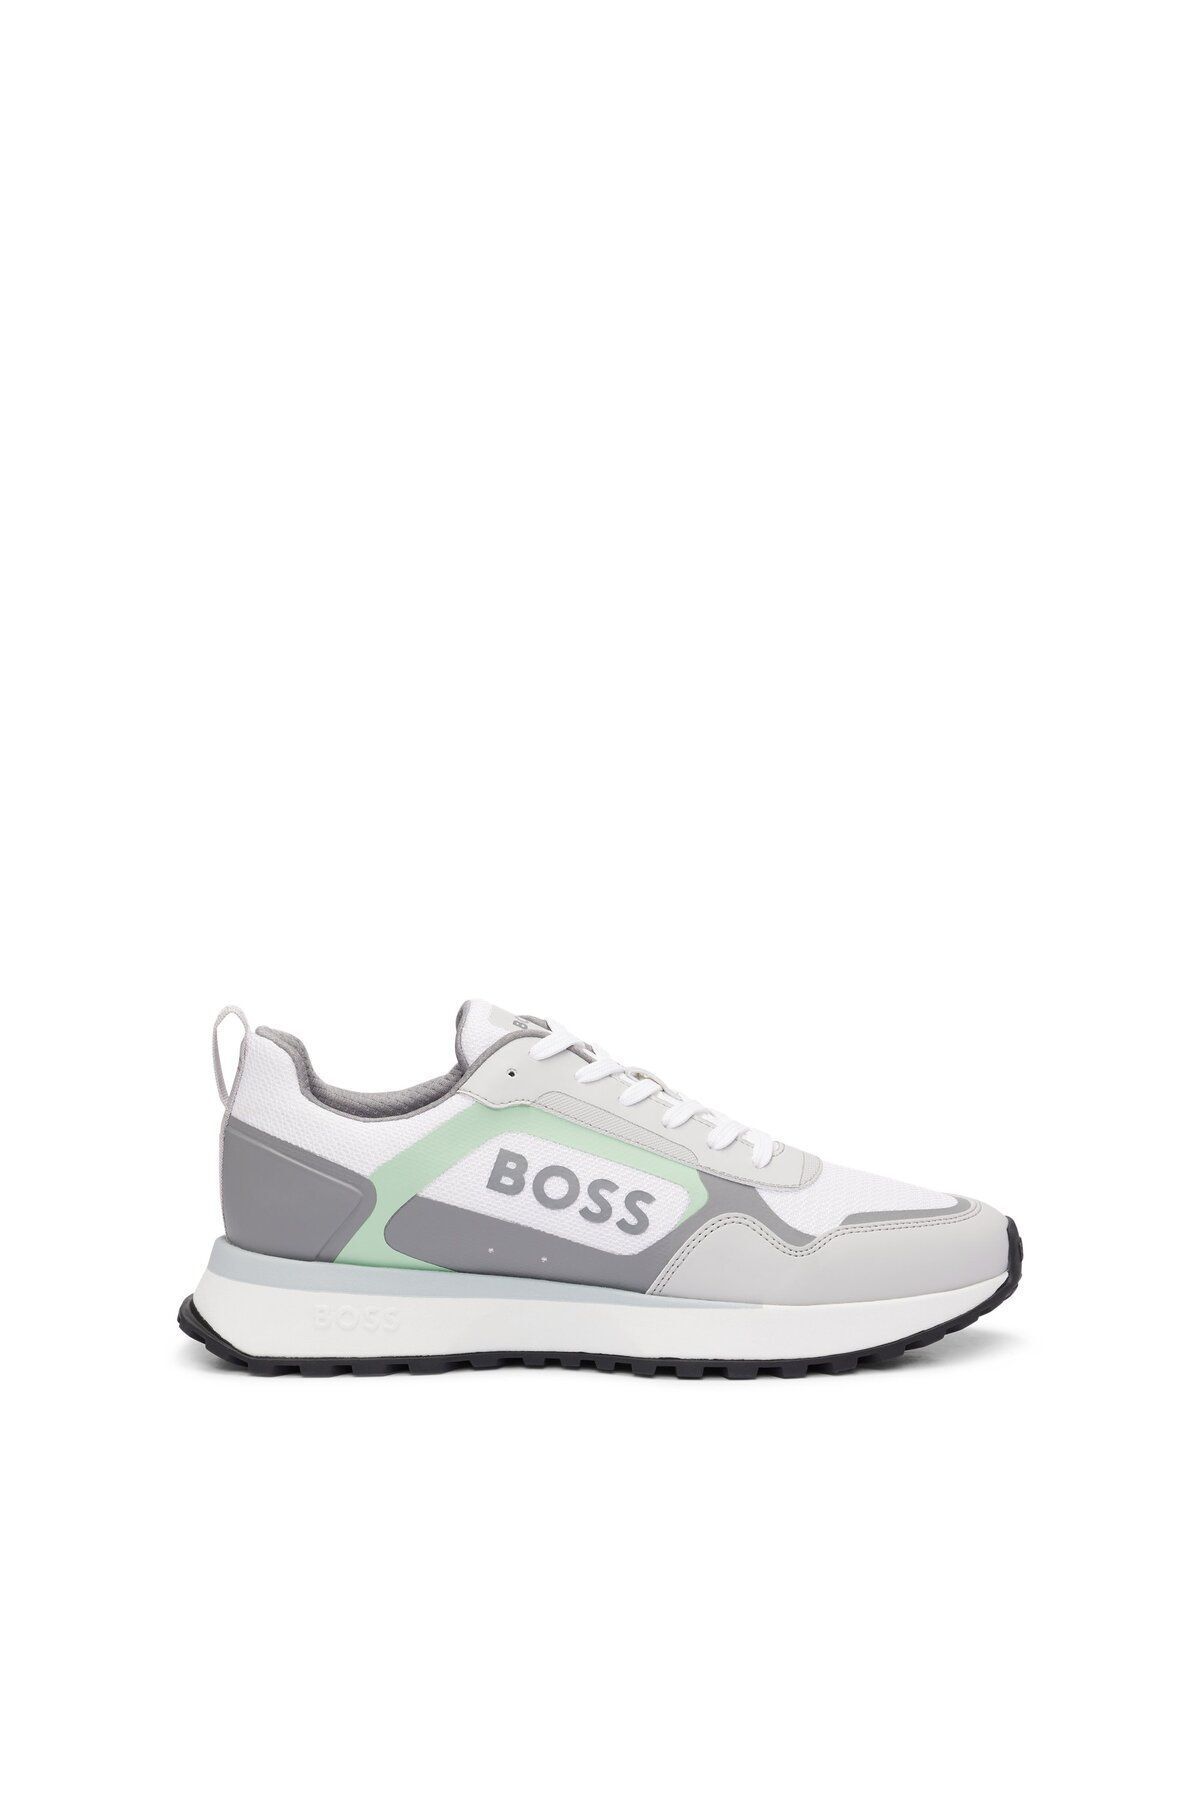 BOSS Erkek Marka Logolu Bağcıklı Kaydırmaz Tabanlı Günlük Gri Sneaker 50517300-123